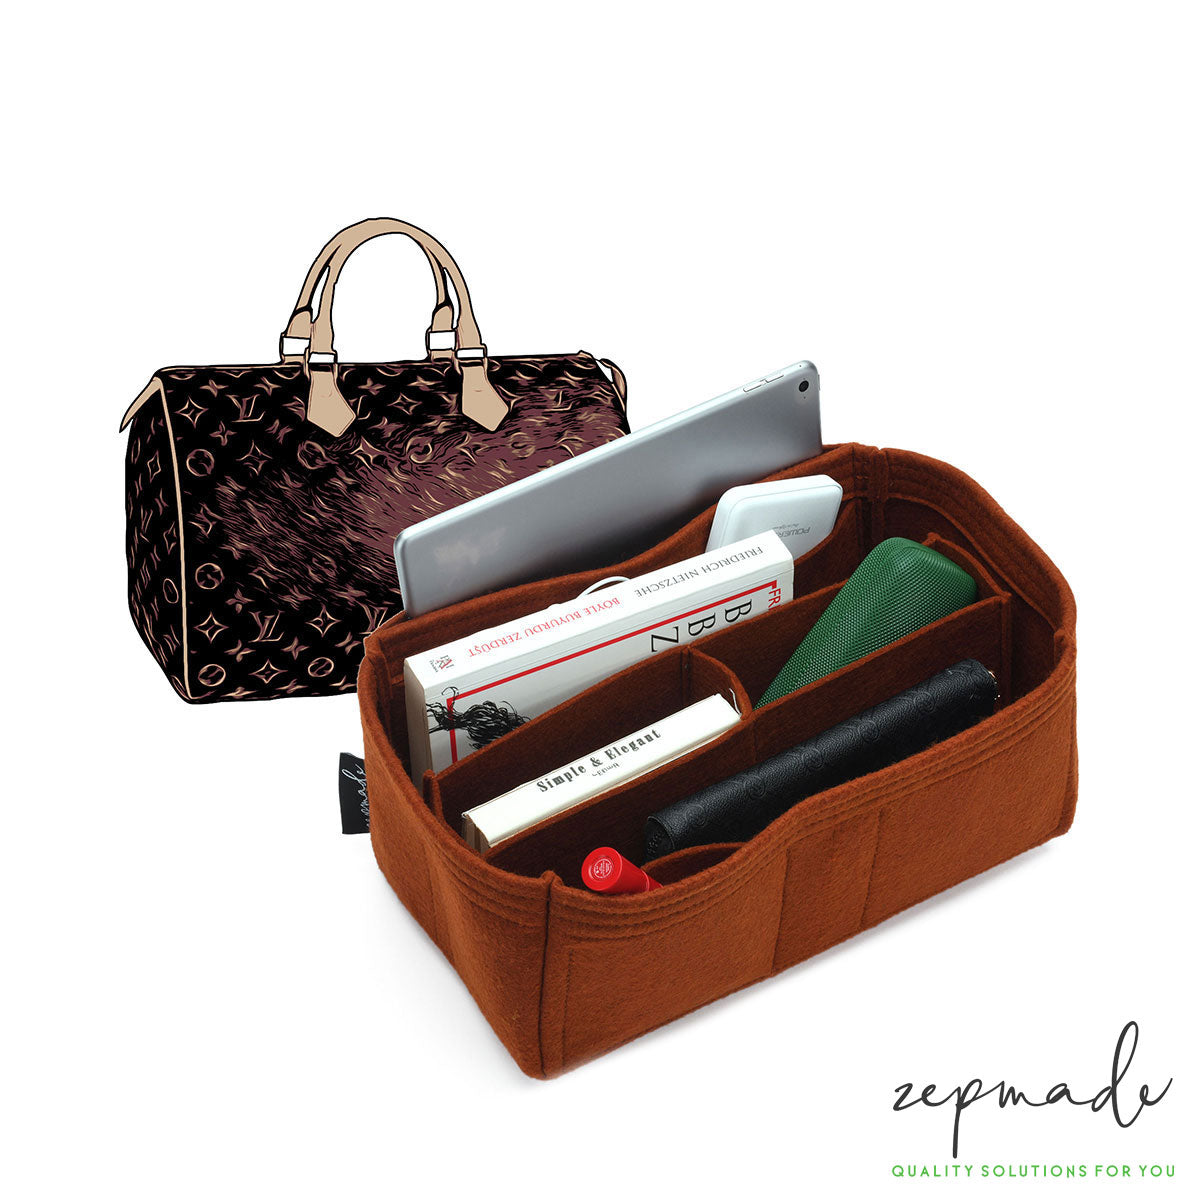 Suedette Regular Style Leather Handbag Organizer for Louis Vuitton Speedy 25,  Speedy 30, Speedy 35, and Speedy 40